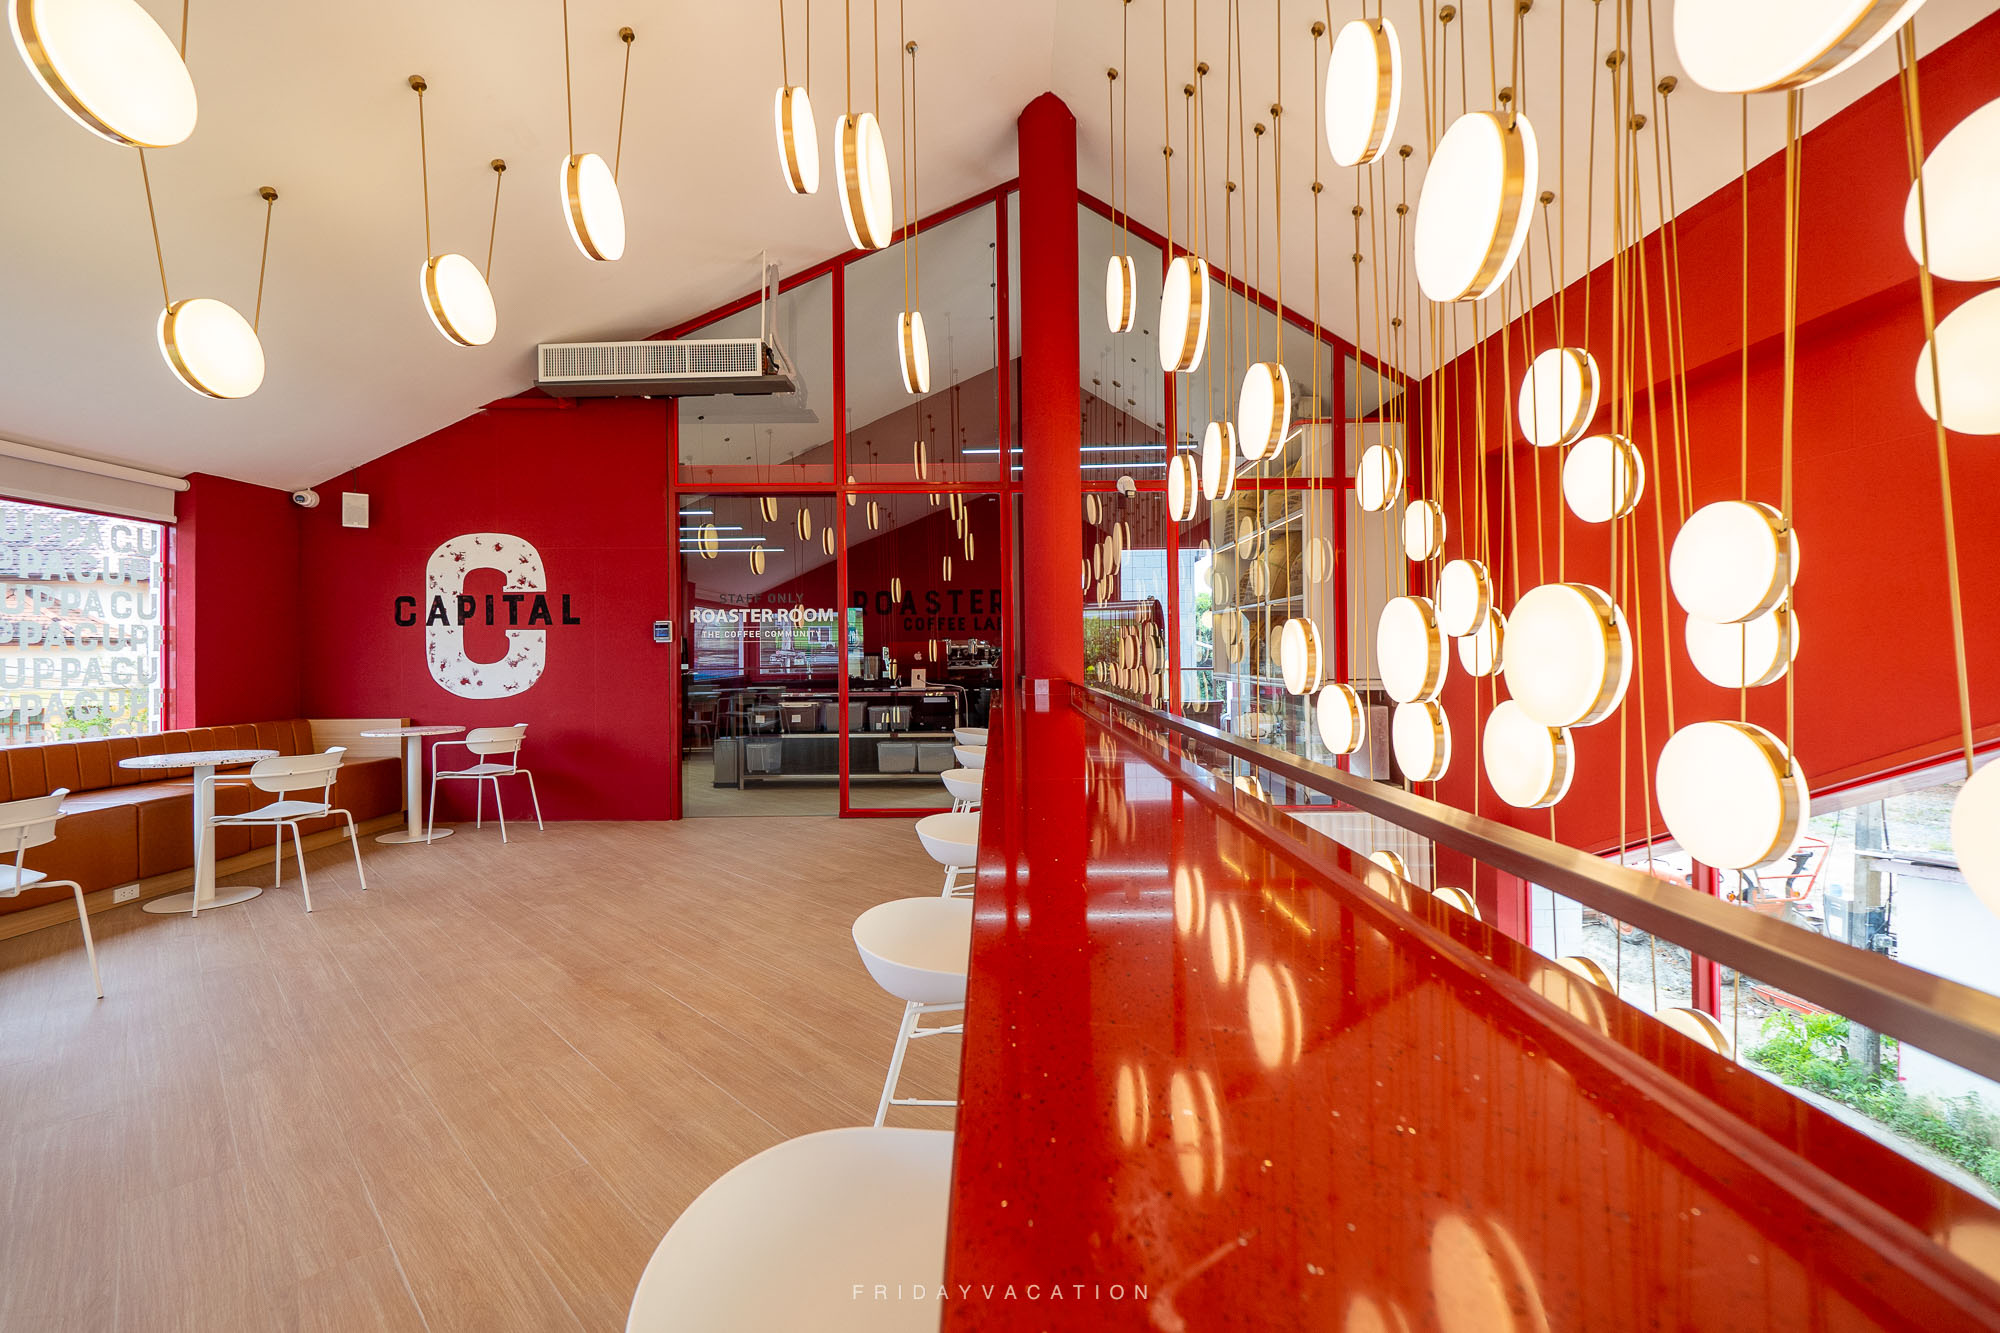 CUPPA COFFEE คาเฟ่สุราษฎร์ เปิดใหม่ ร้านสวย นั่งสบาย มีกาแฟ Specialty และ เบเกอรี่โฮมเมด 